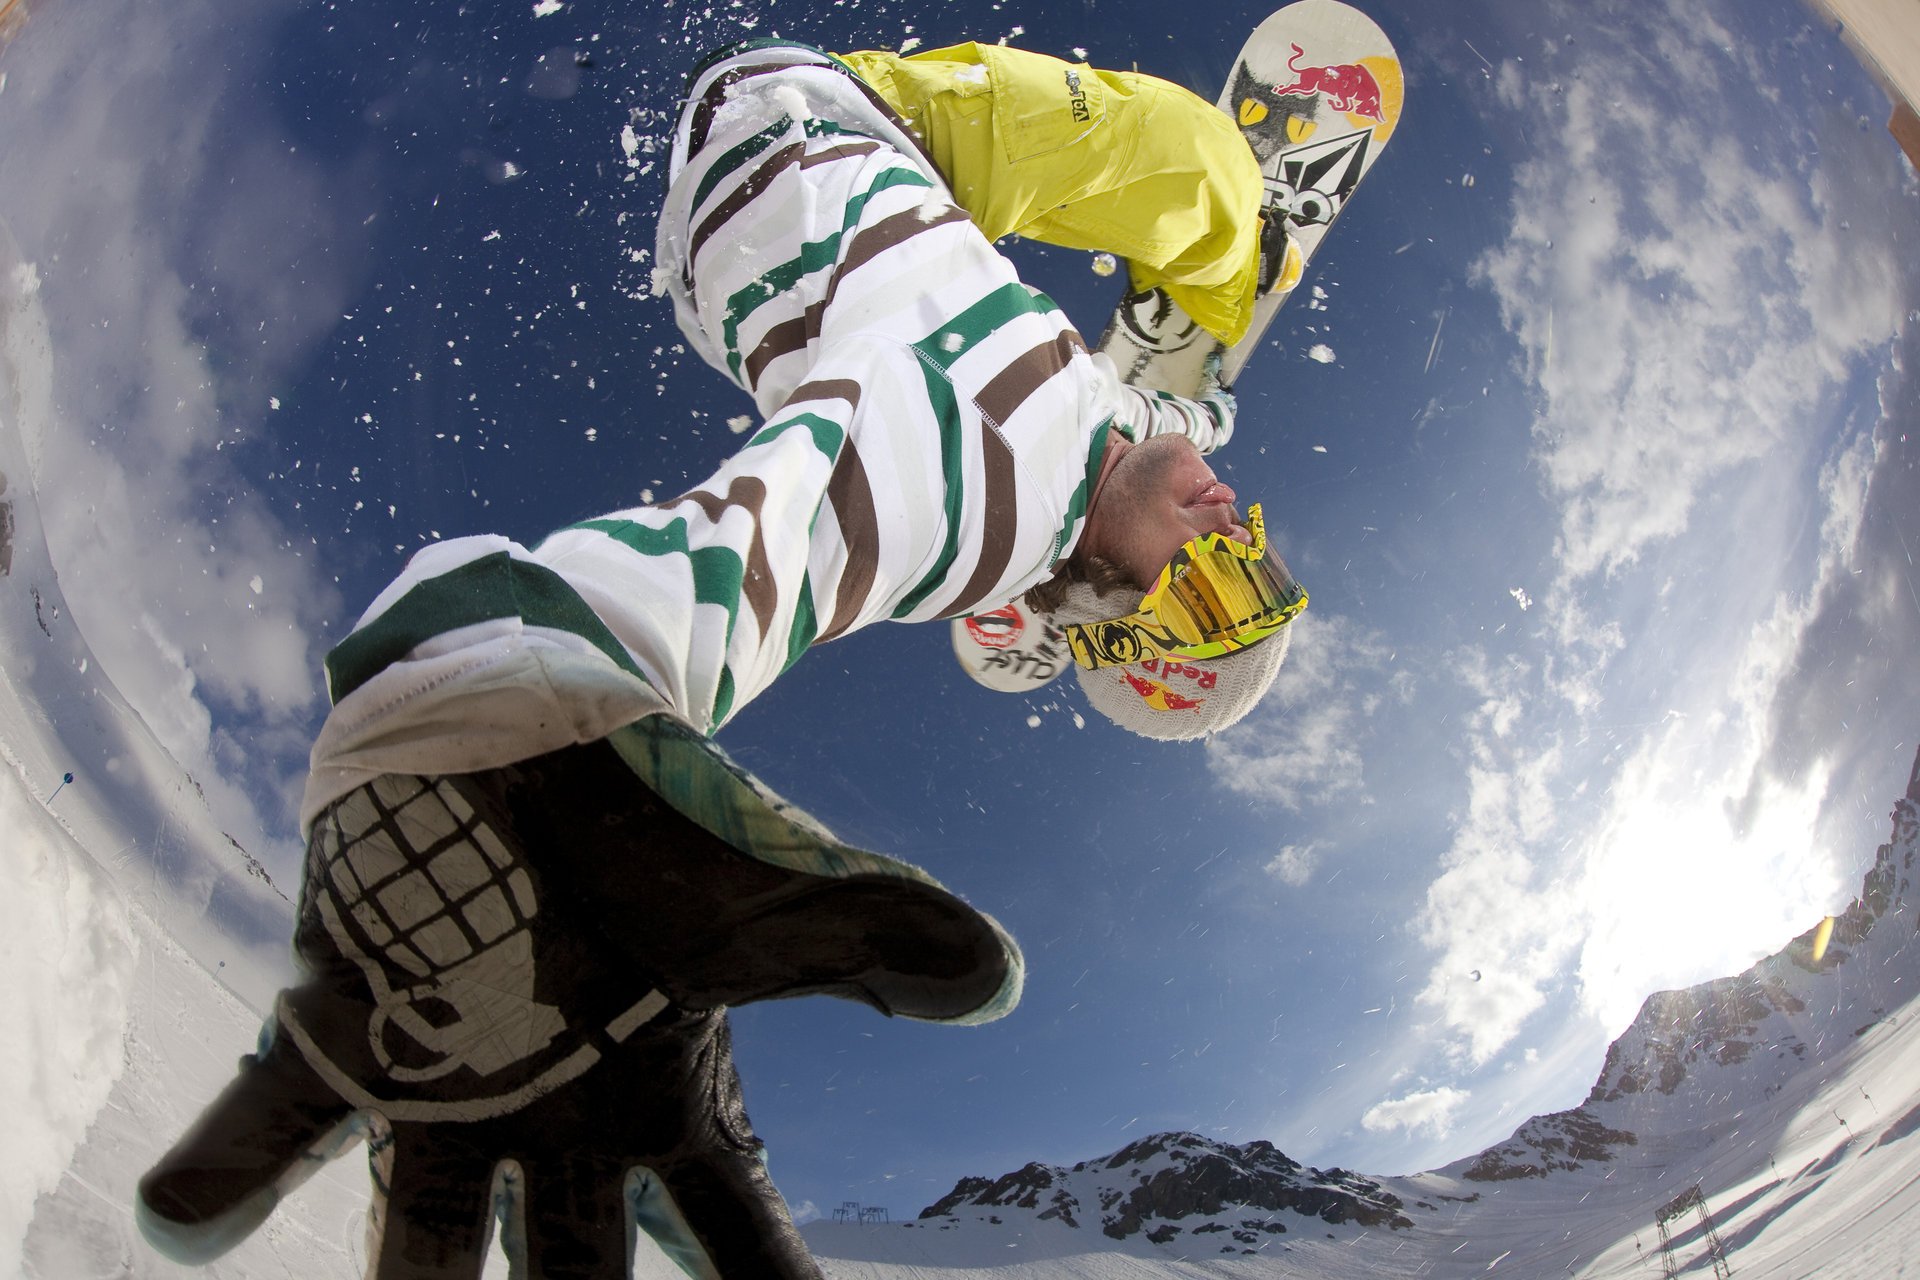 Прыжок сноубордиста, фотография снизу